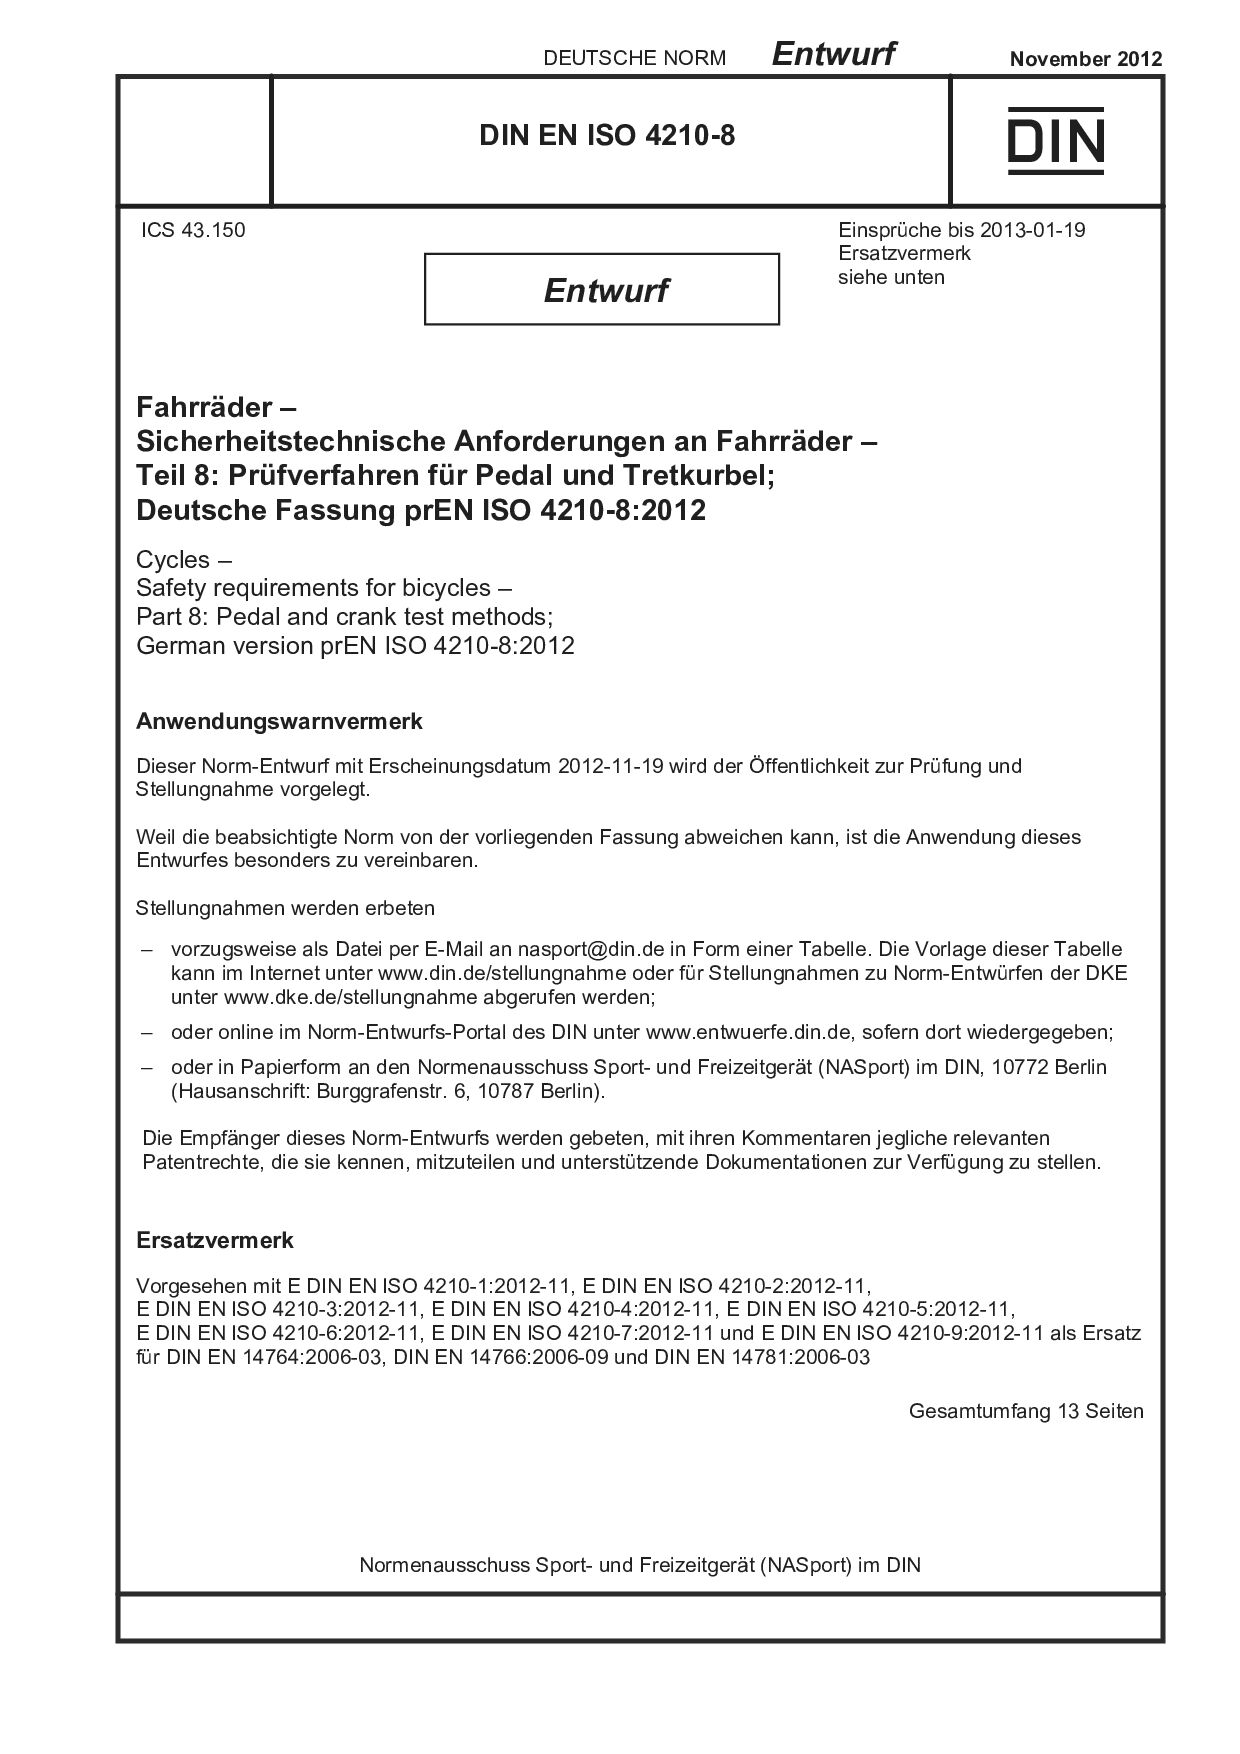 DIN EN ISO 4210-8 E:2012-11封面图